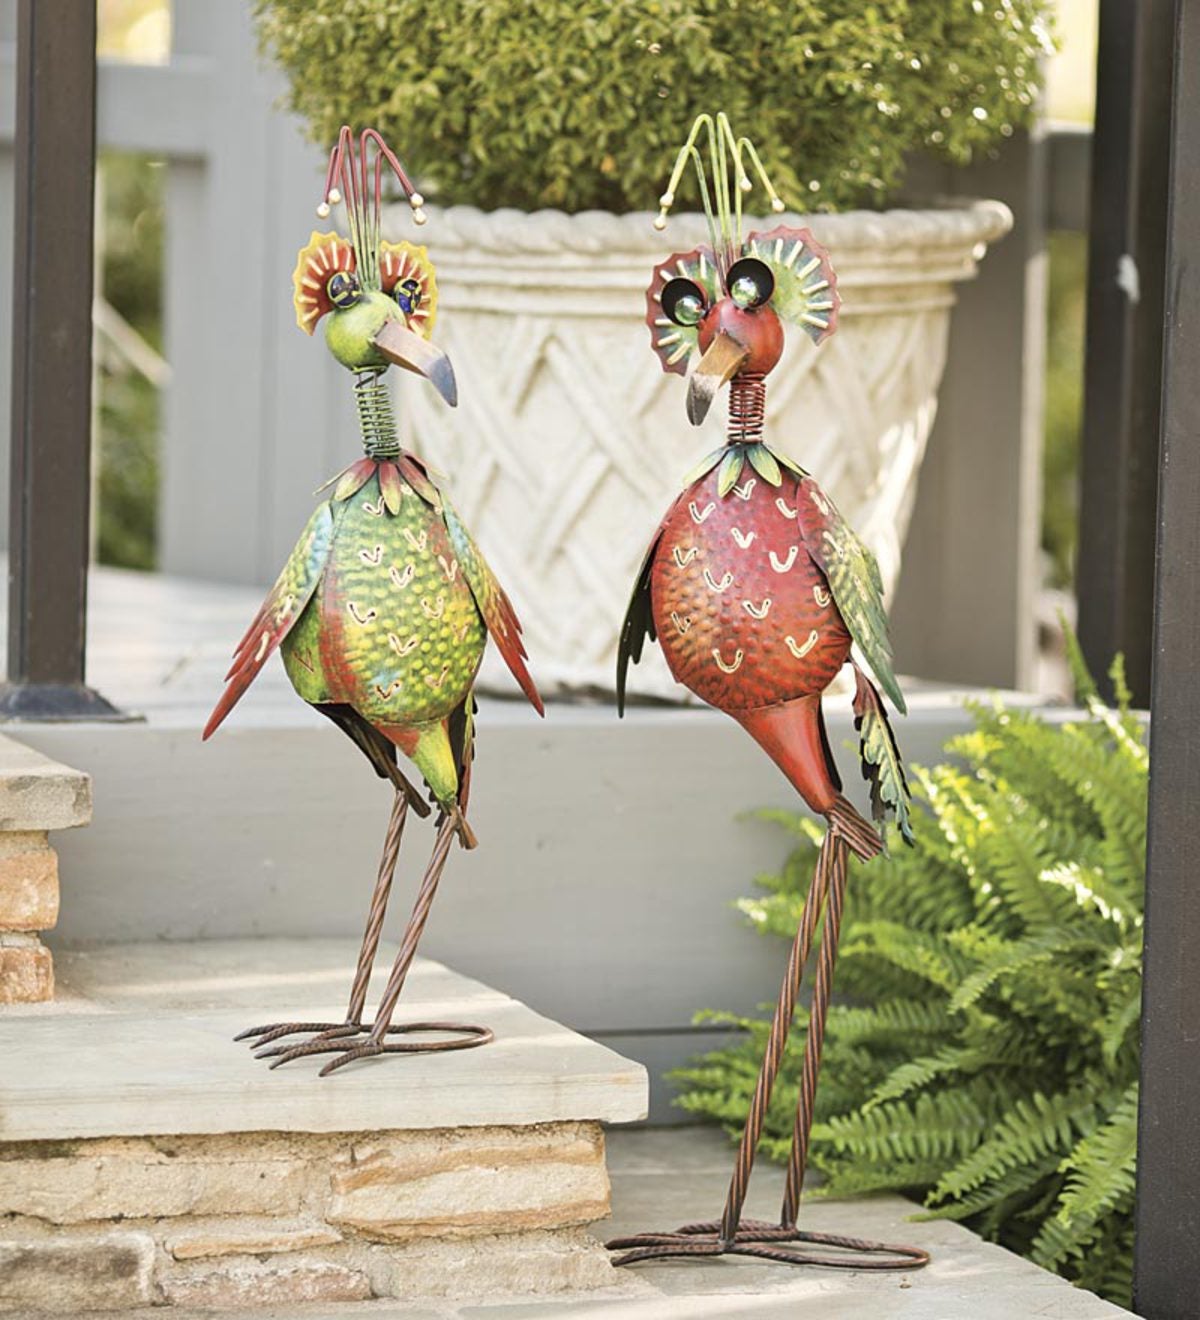 Red Bobble Head Bird Metal Garden, Metal Garden Sculptures Birds